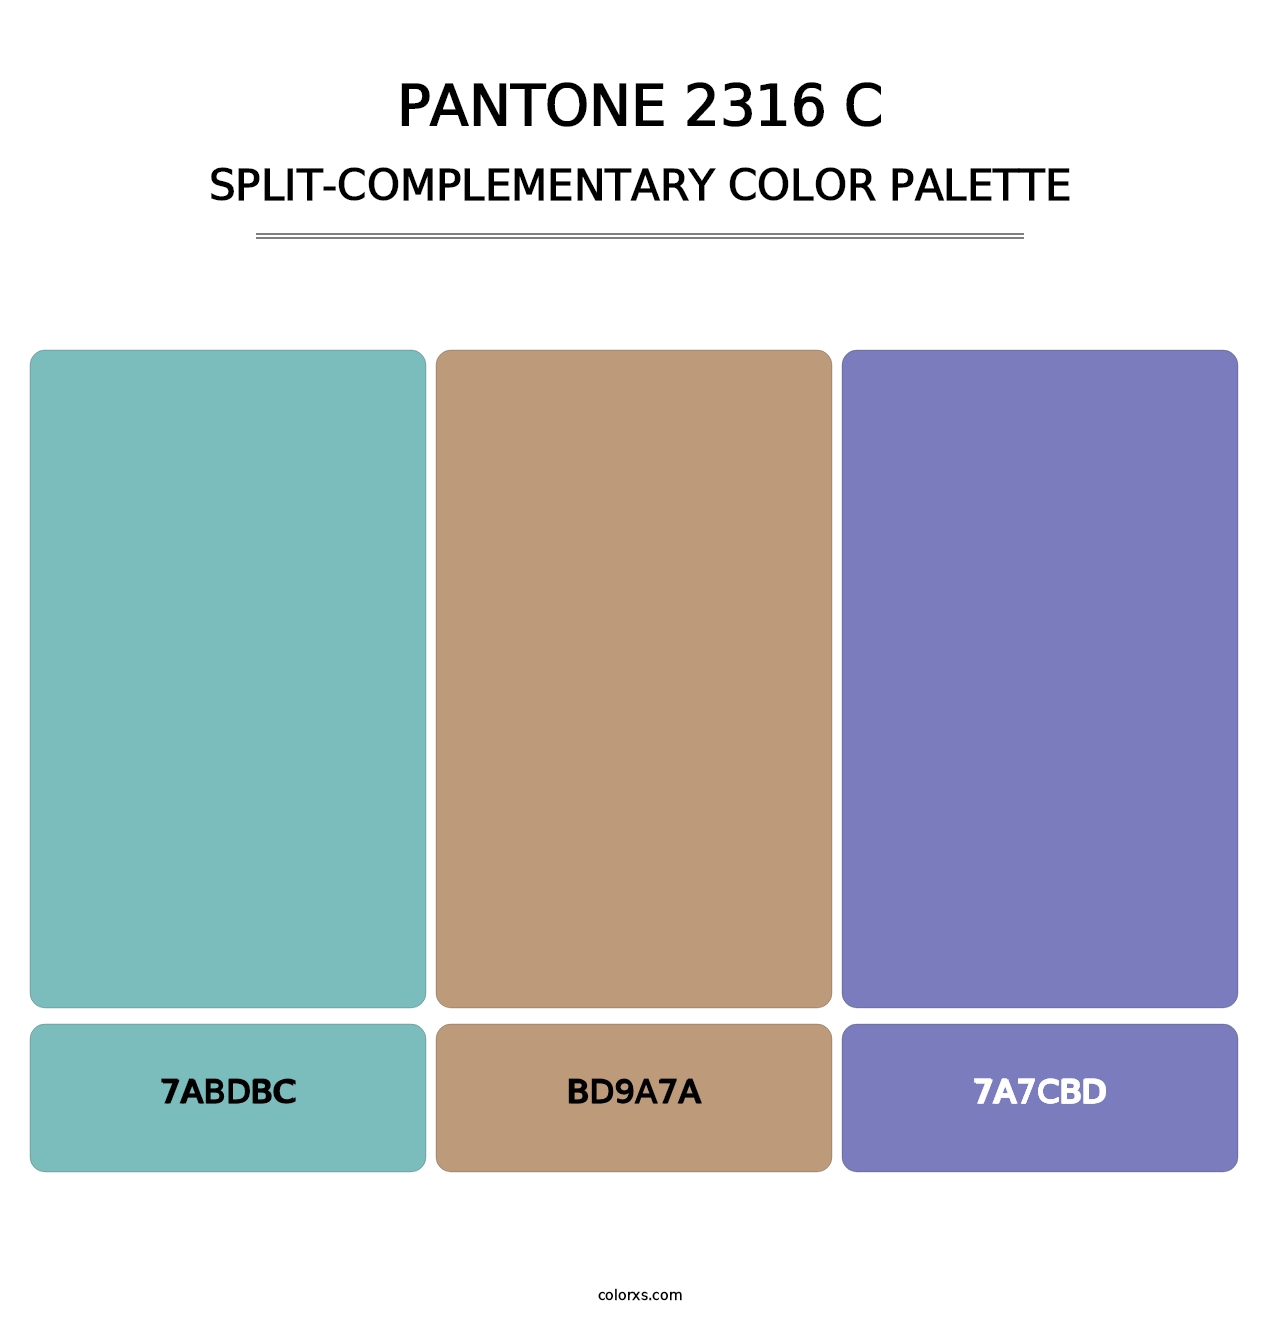 PANTONE 2316 C - Split-Complementary Color Palette